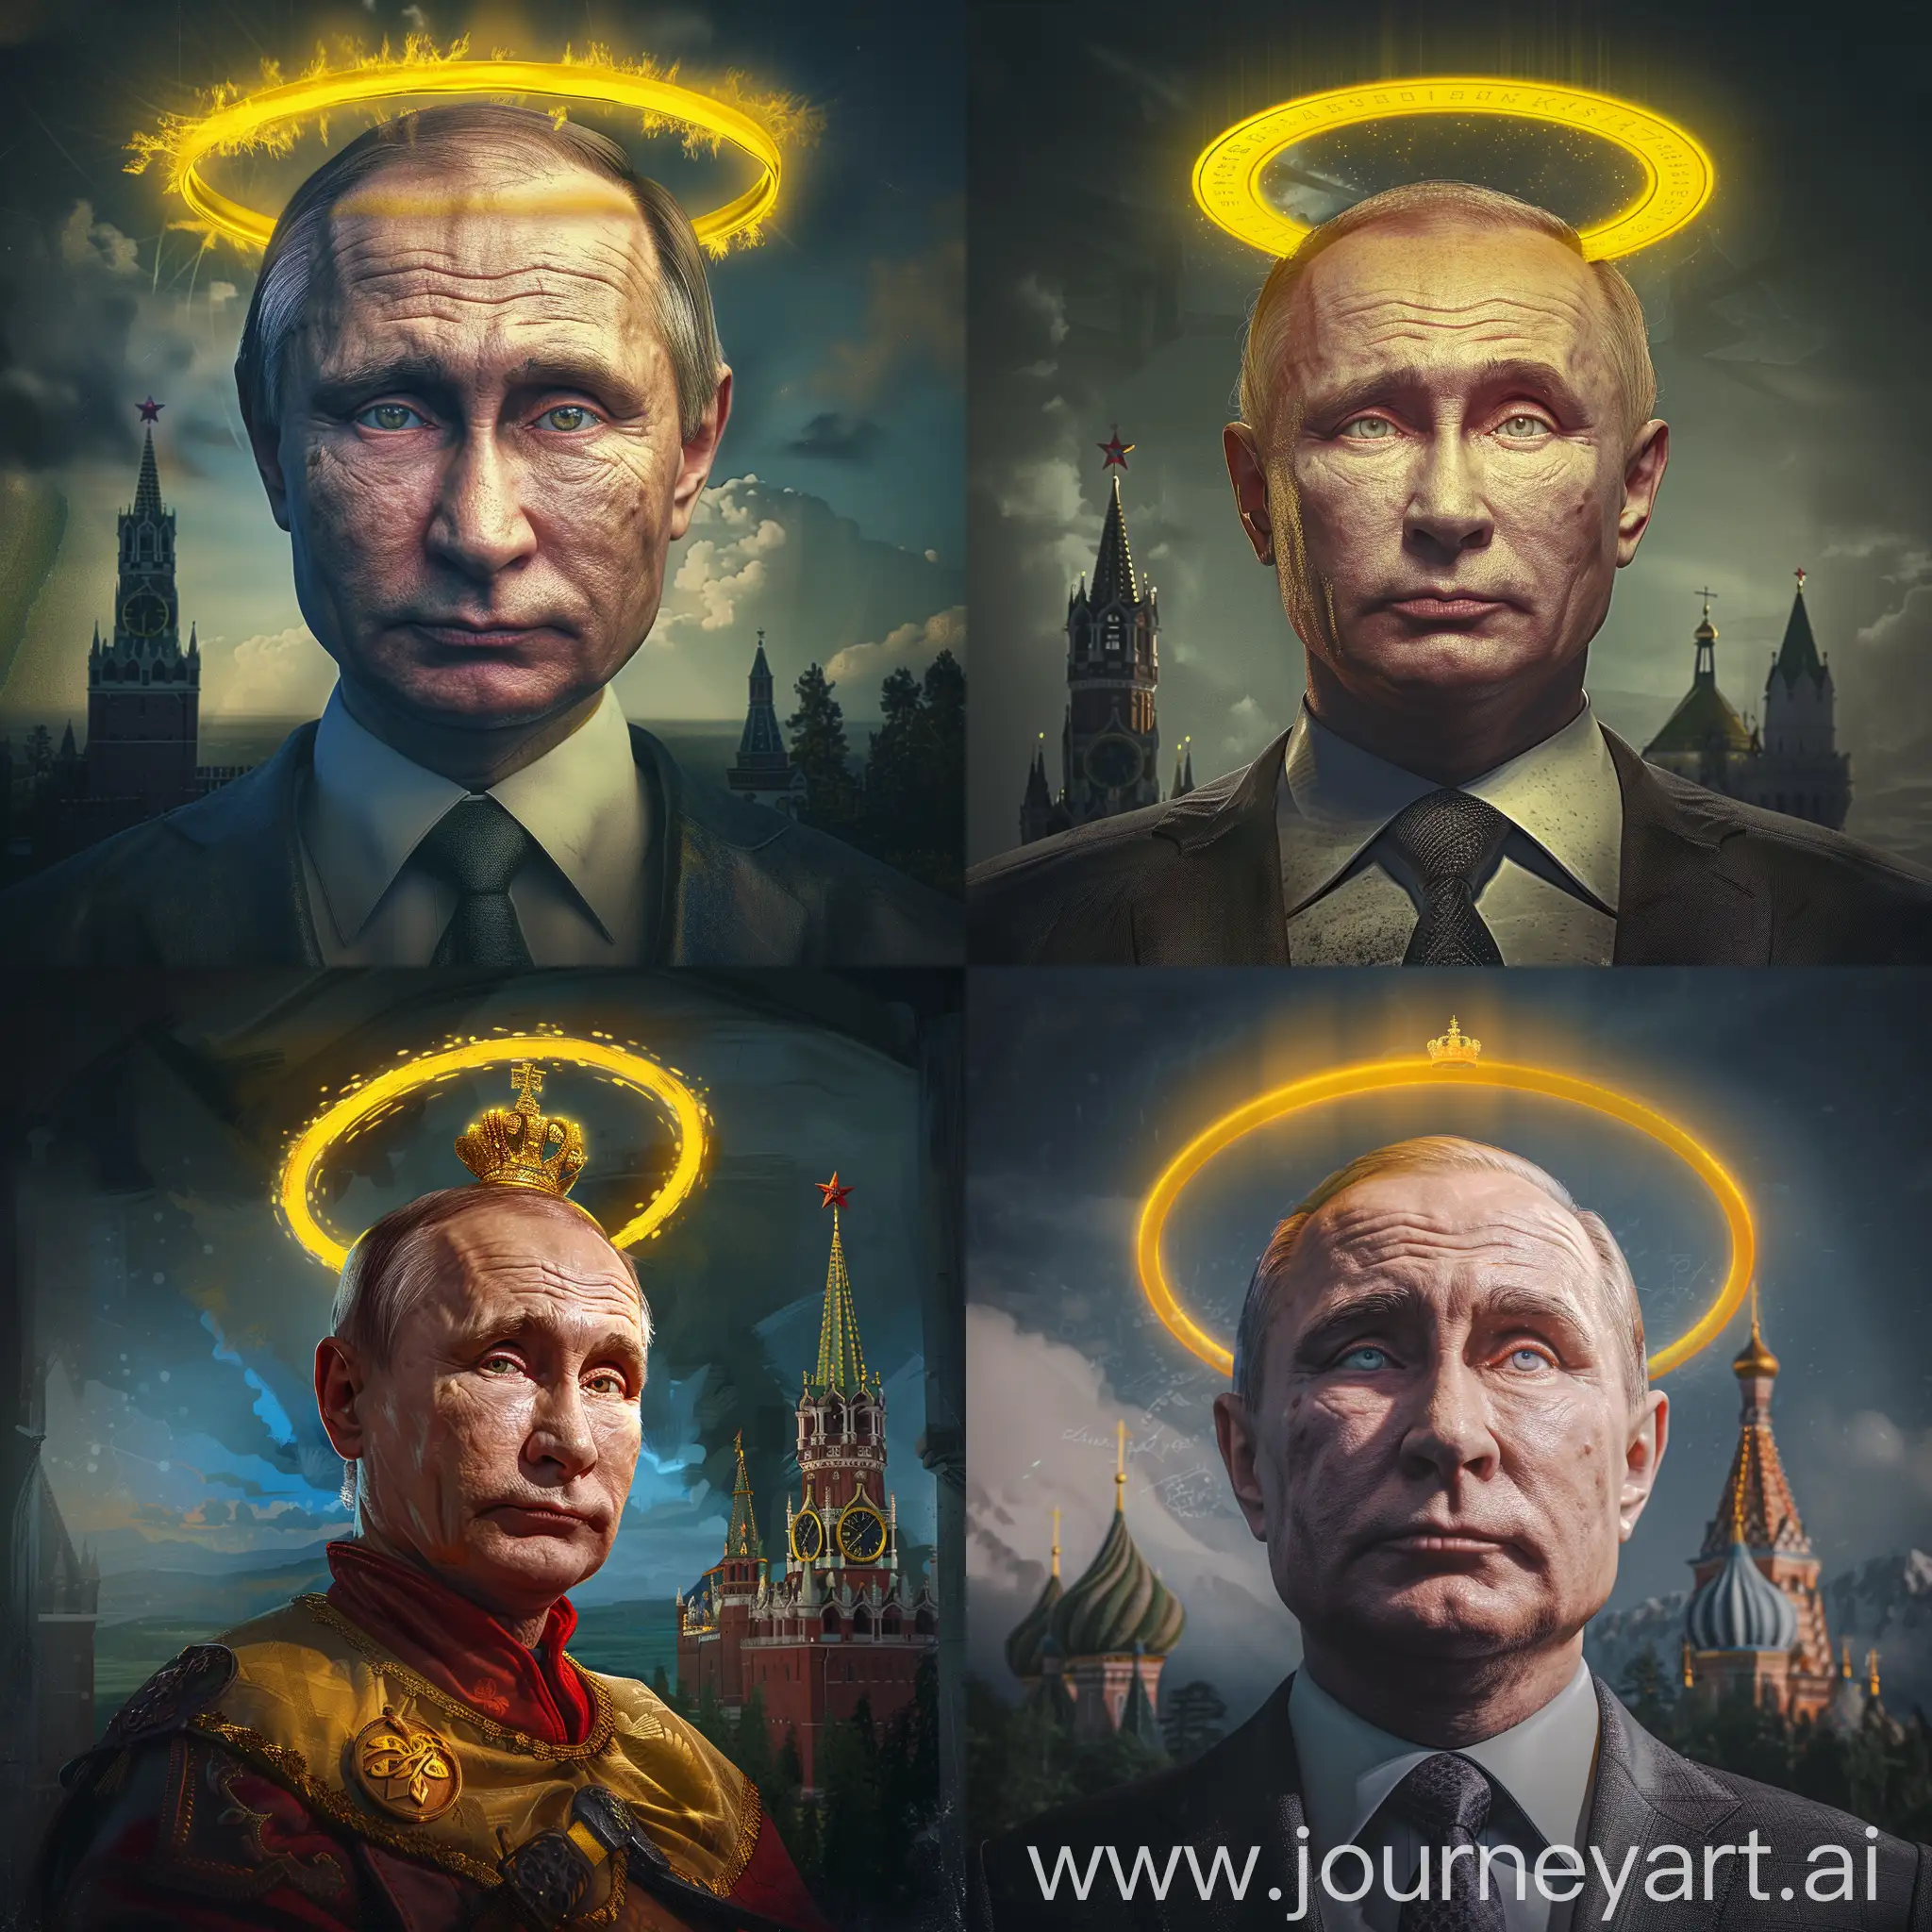 Владимир Путин в образе царя, над головой желтый нимб, задний фон замок, реалистично, крупный план, супер детализация, 8к, гипер реализм, профессиональное освещение, острый фокус, максимум деталей